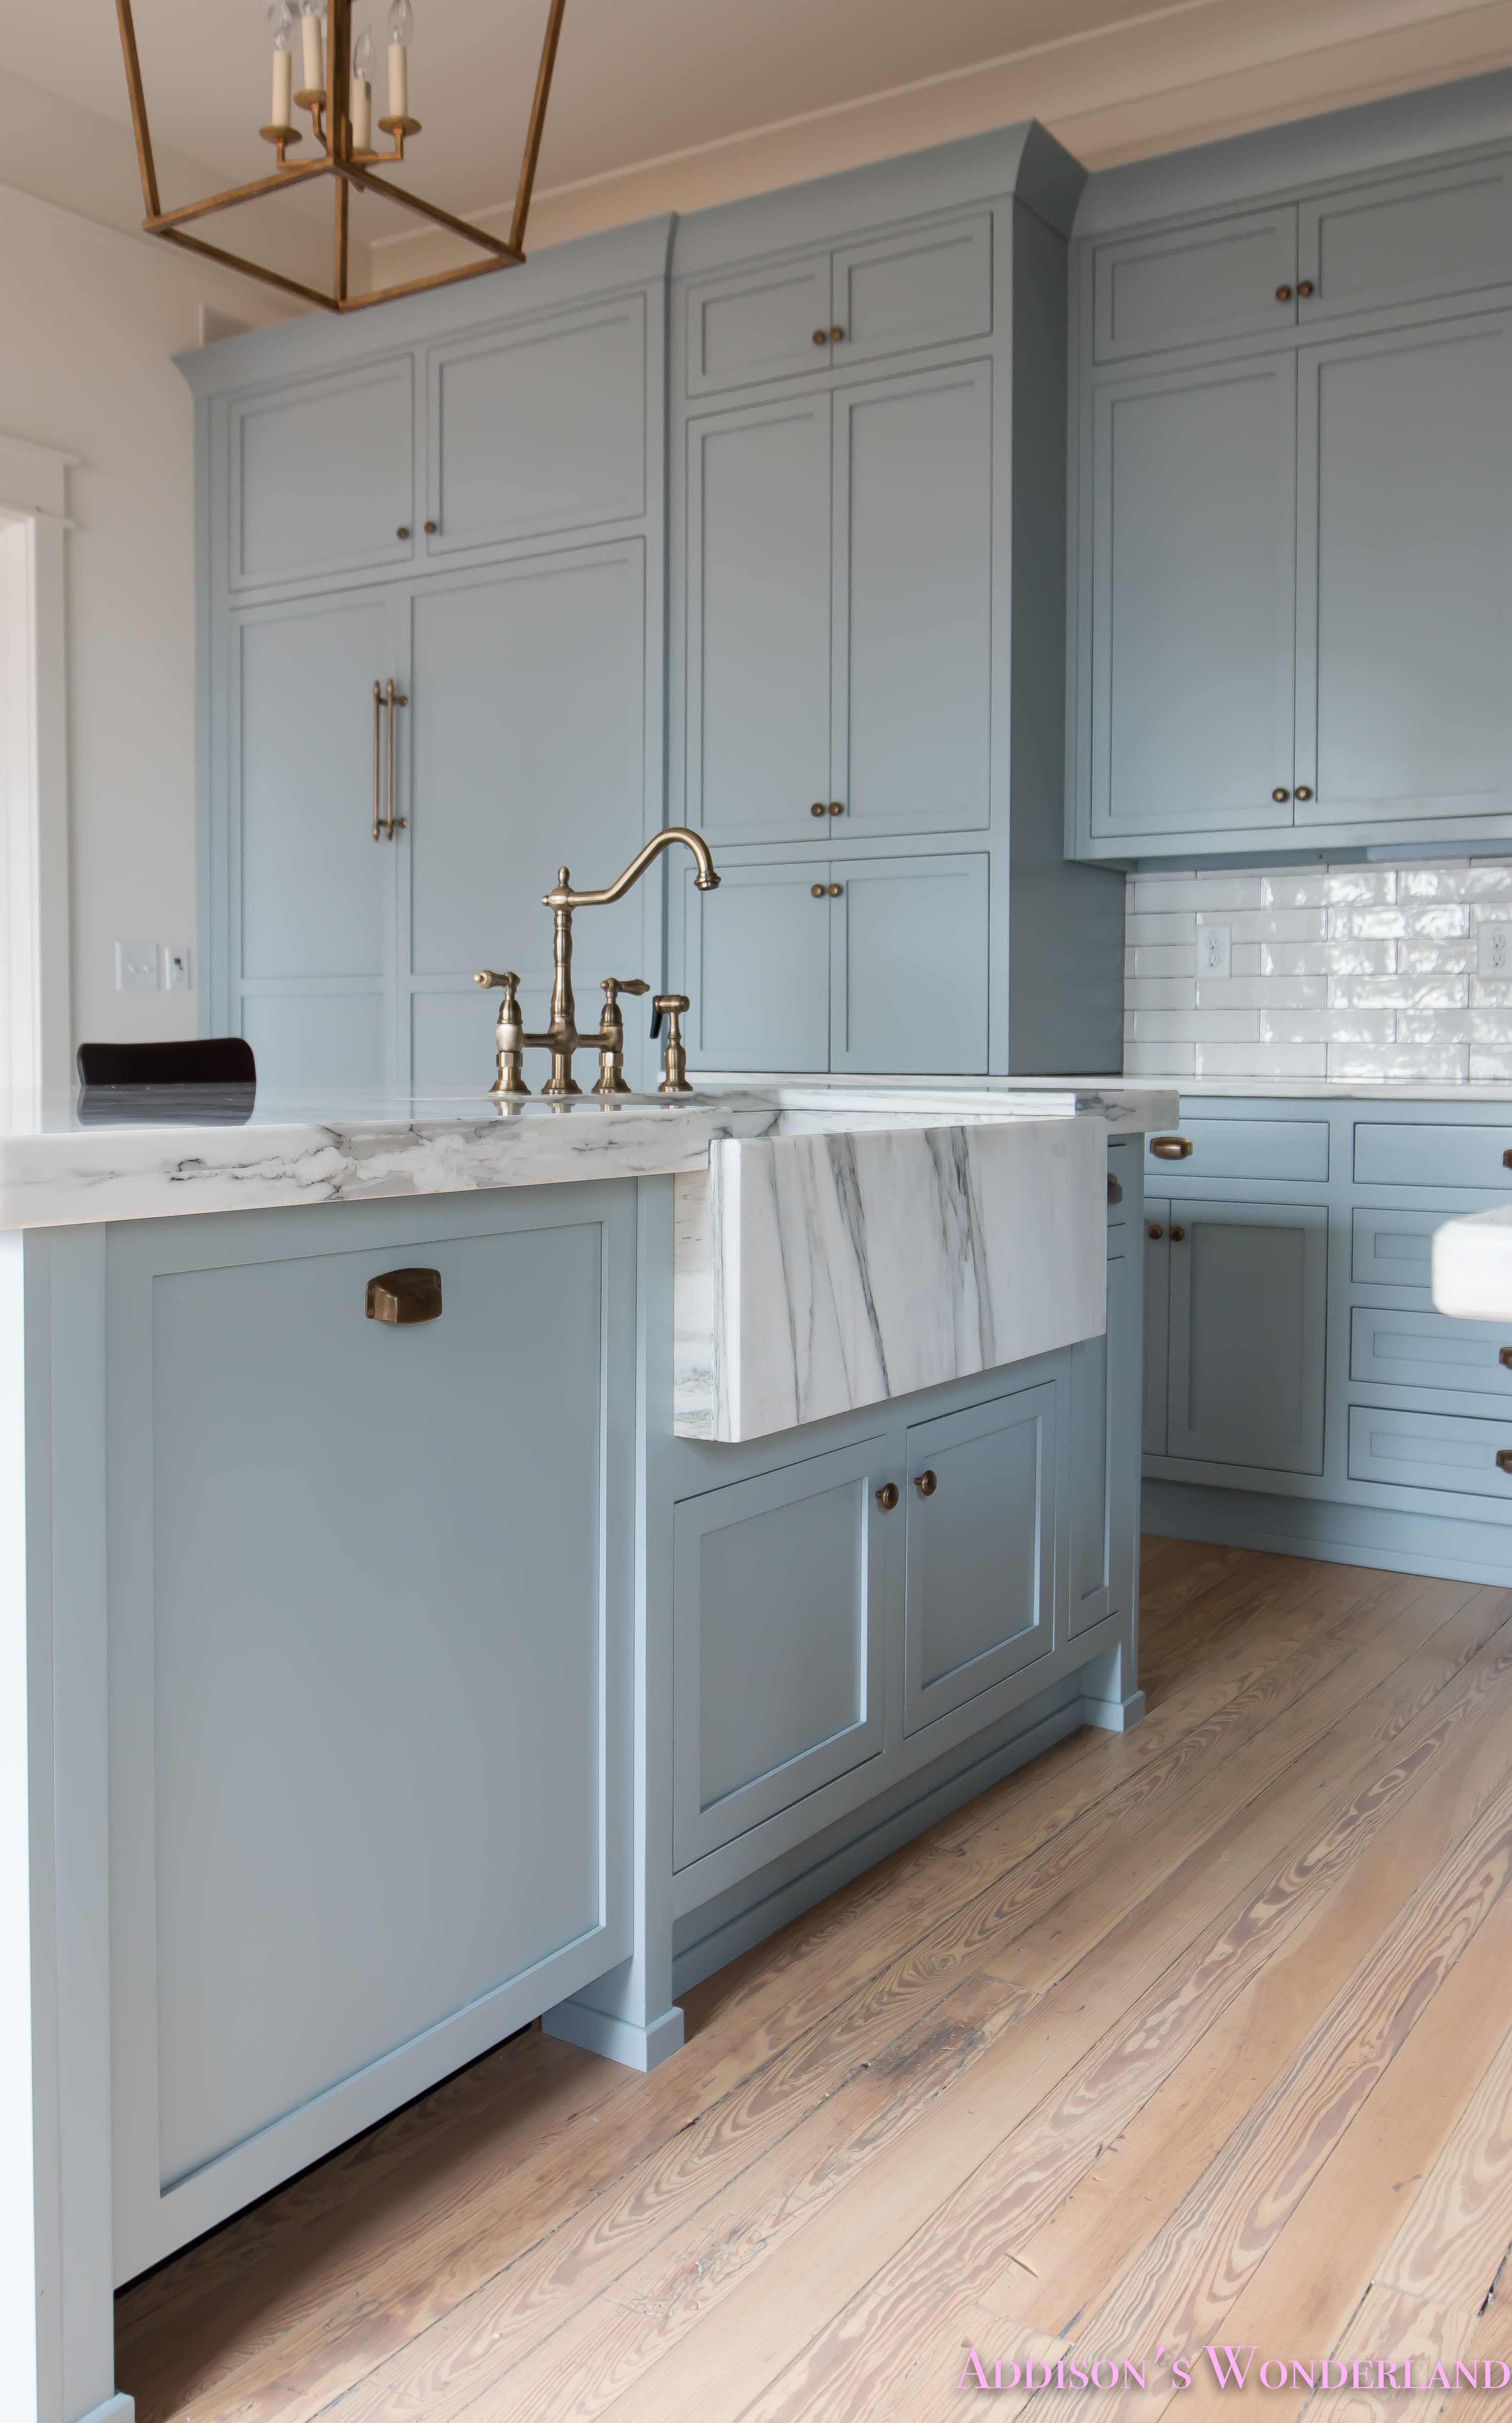 https://addisonswonderland.com/our-vintage-modern-kitchen-reveal/a-classic-vintage-modern-kitchen-blue-gray-cabinets-inset-shaker-black-gold-vent-hood-antique-brass-faucet-white-subway-backsplash-tile-gold-open-shelves-13-of-16/